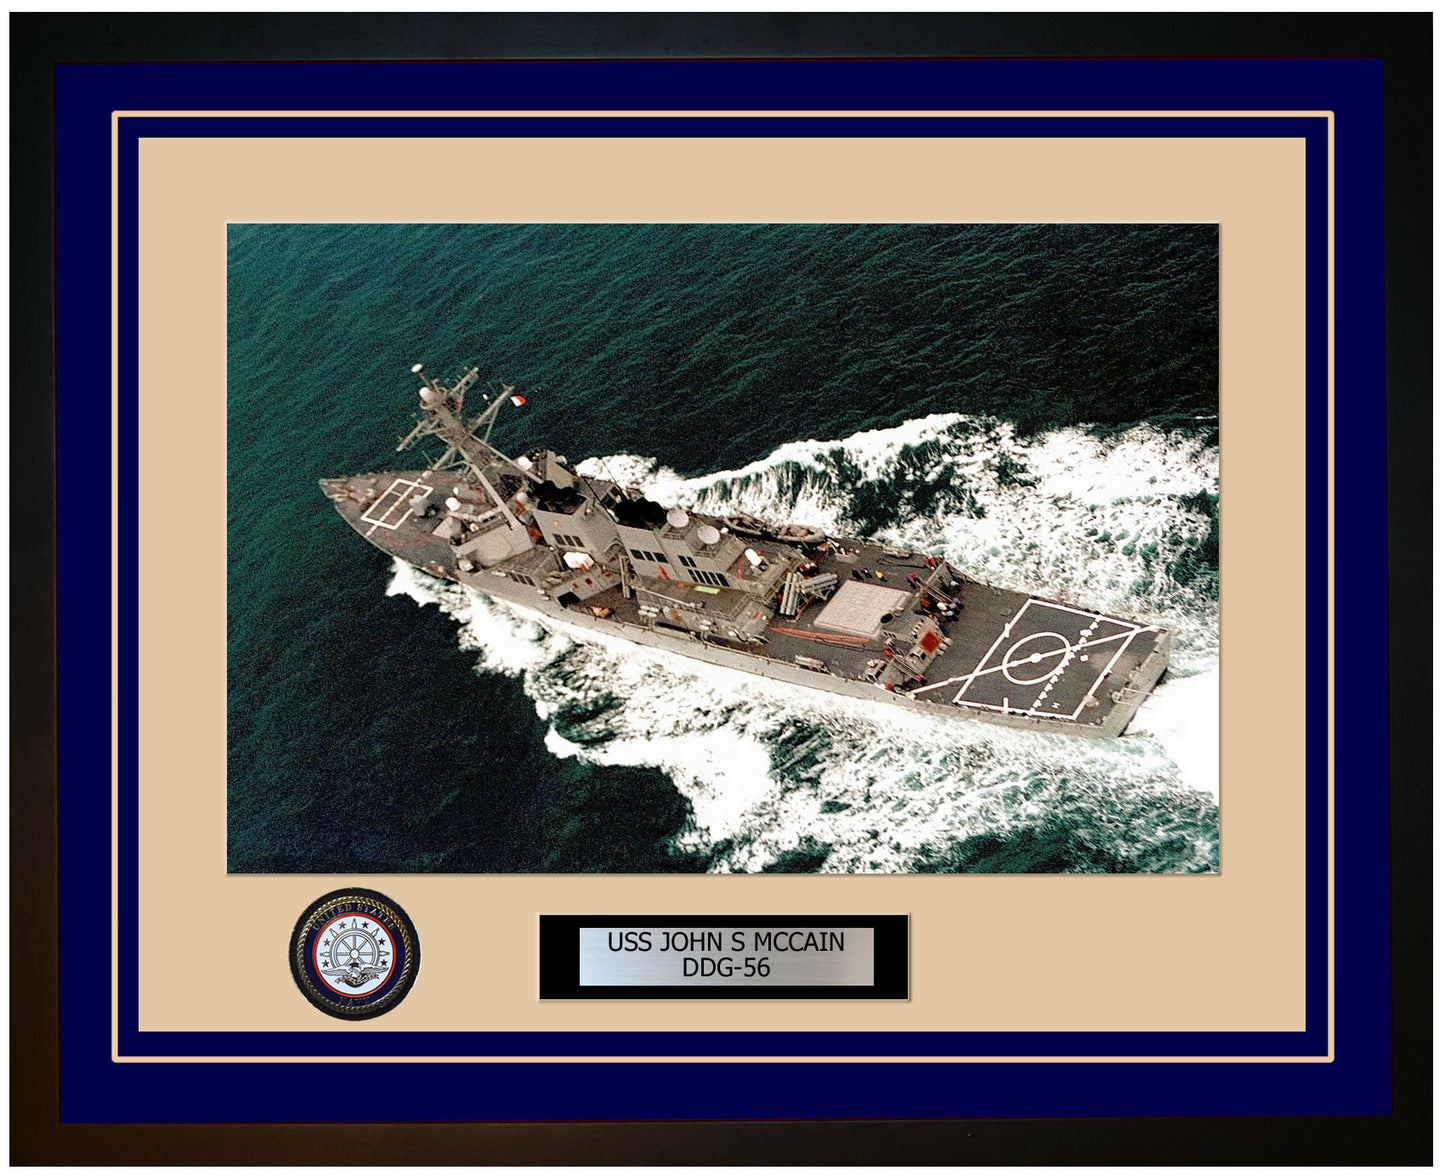 USS JOHN S MCCAIN DDG-56 Framed Navy Ship Photo Blue